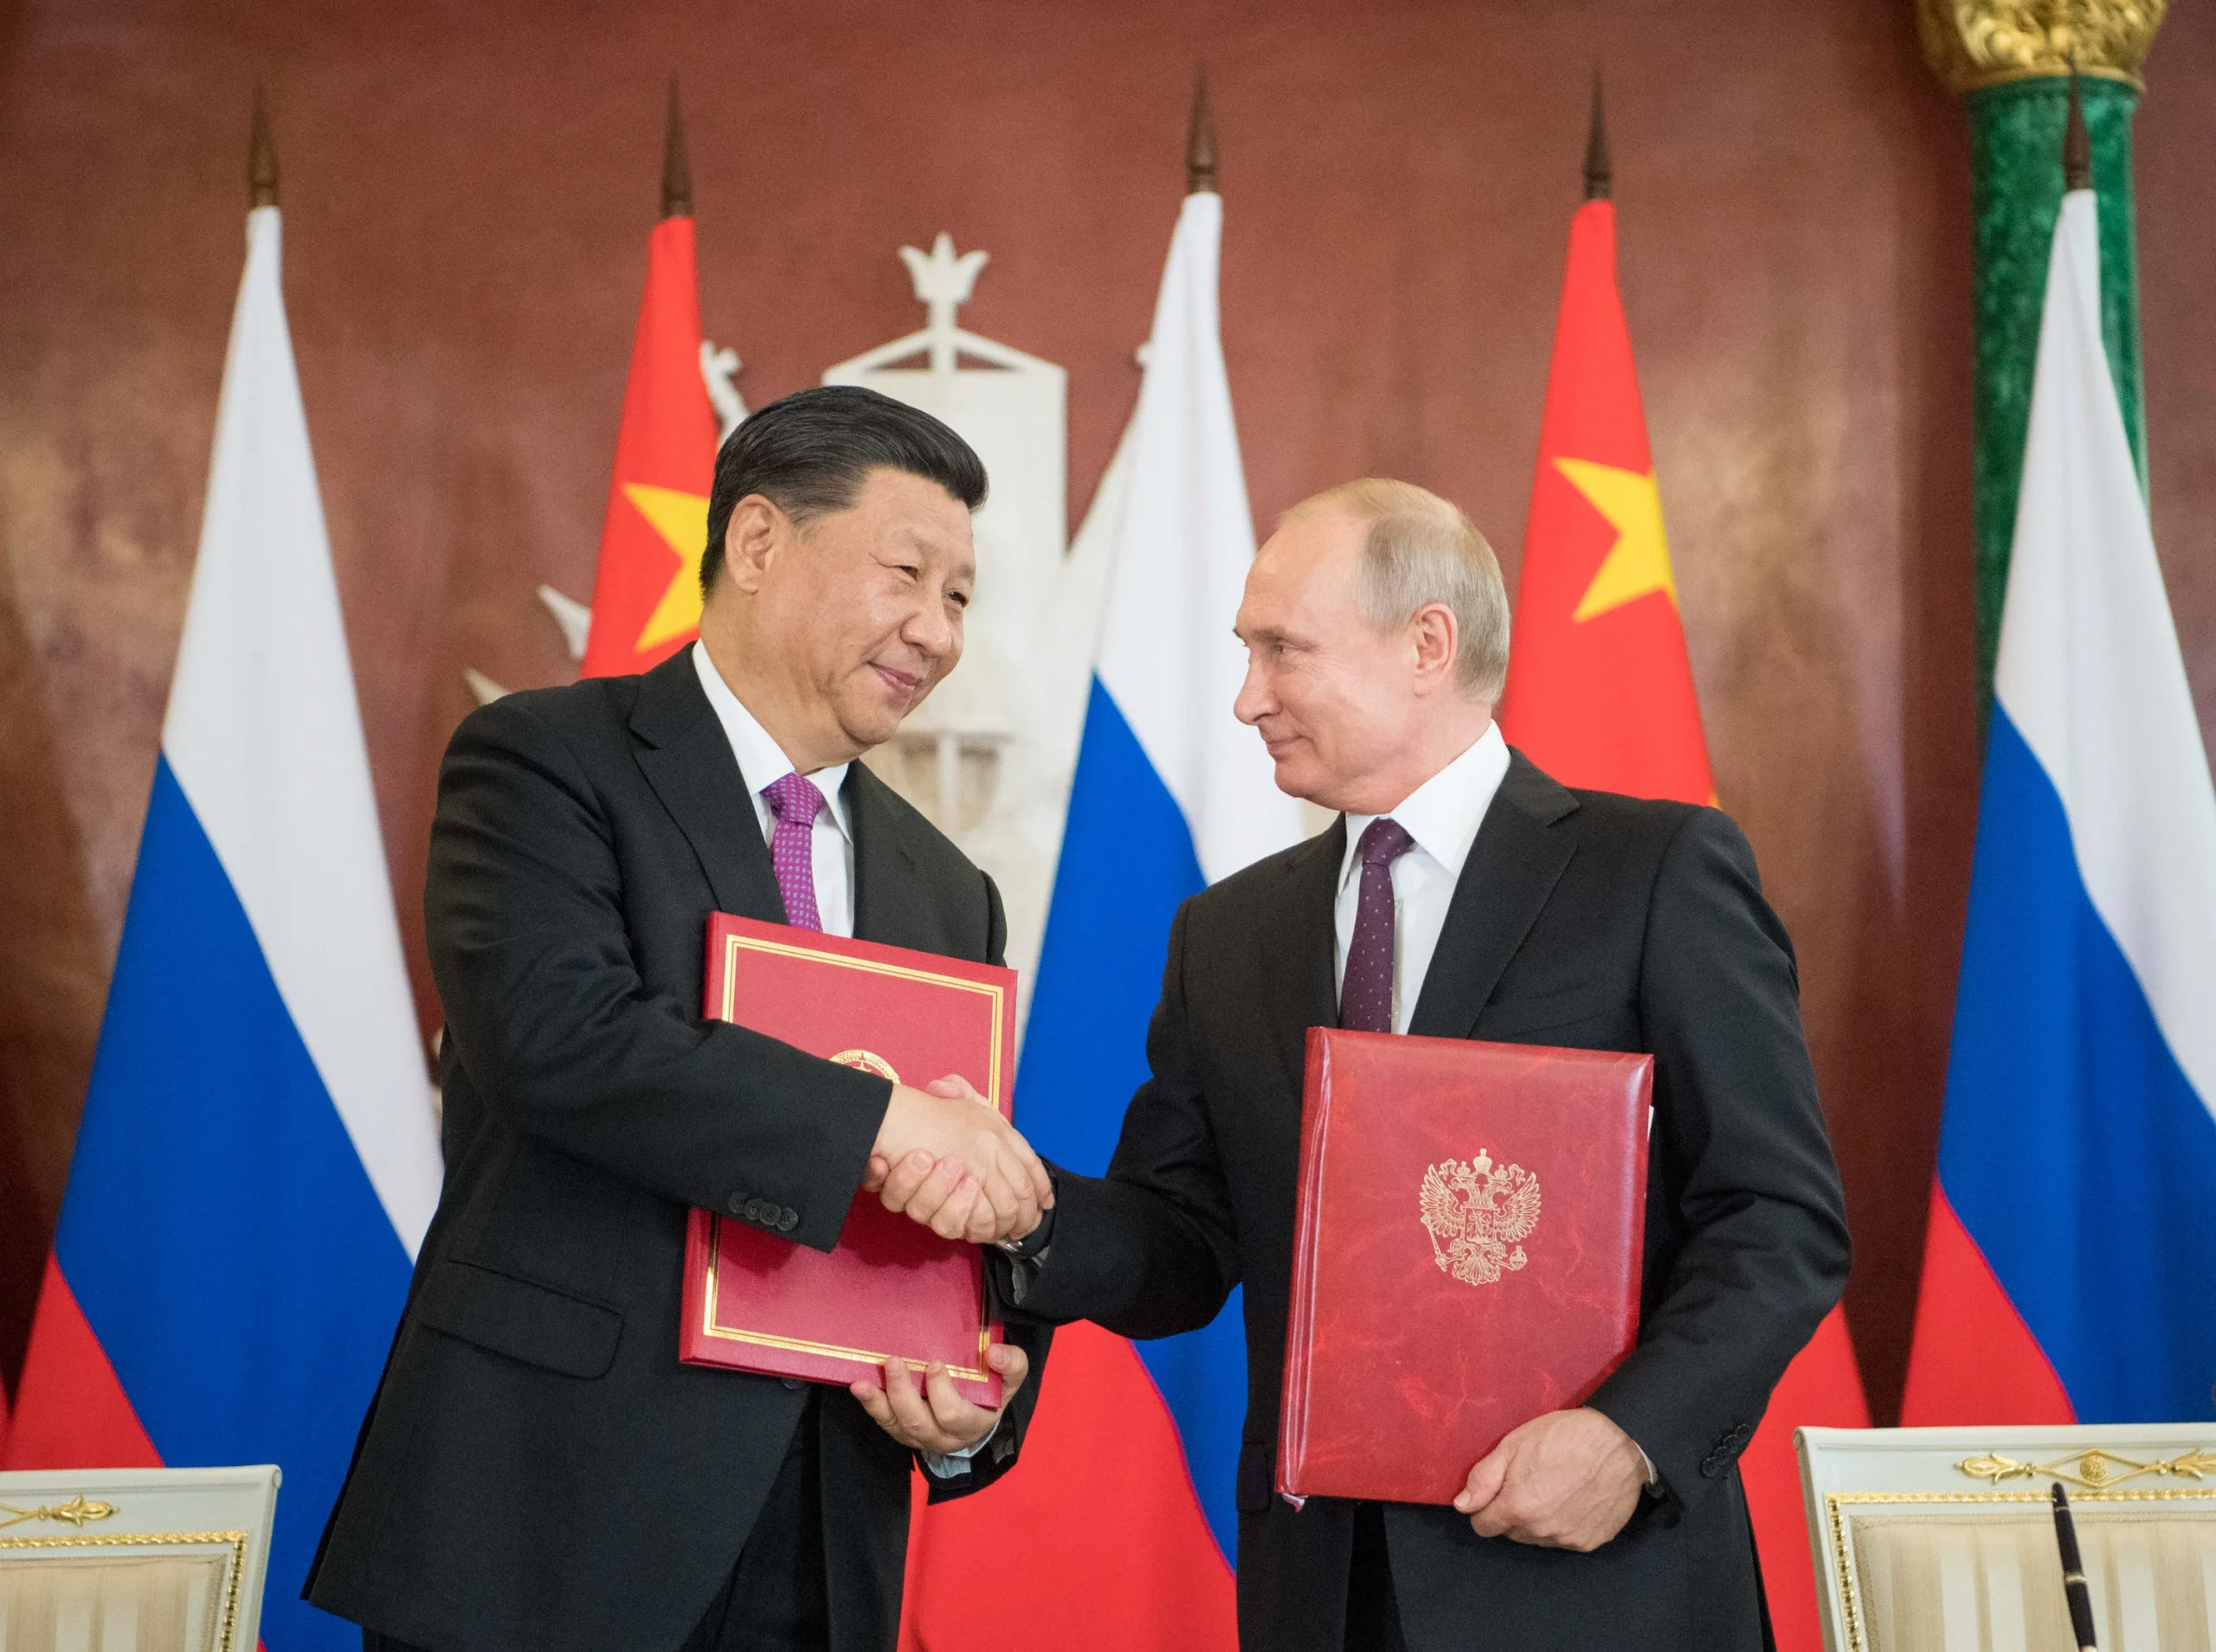 Ενοποίηση στην εξωτερική τους πολιτική ανακοίνωσαν Ρωσία-Κίνα: Ότι ισχύει για τον έναν ισχύει & για τον άλλον